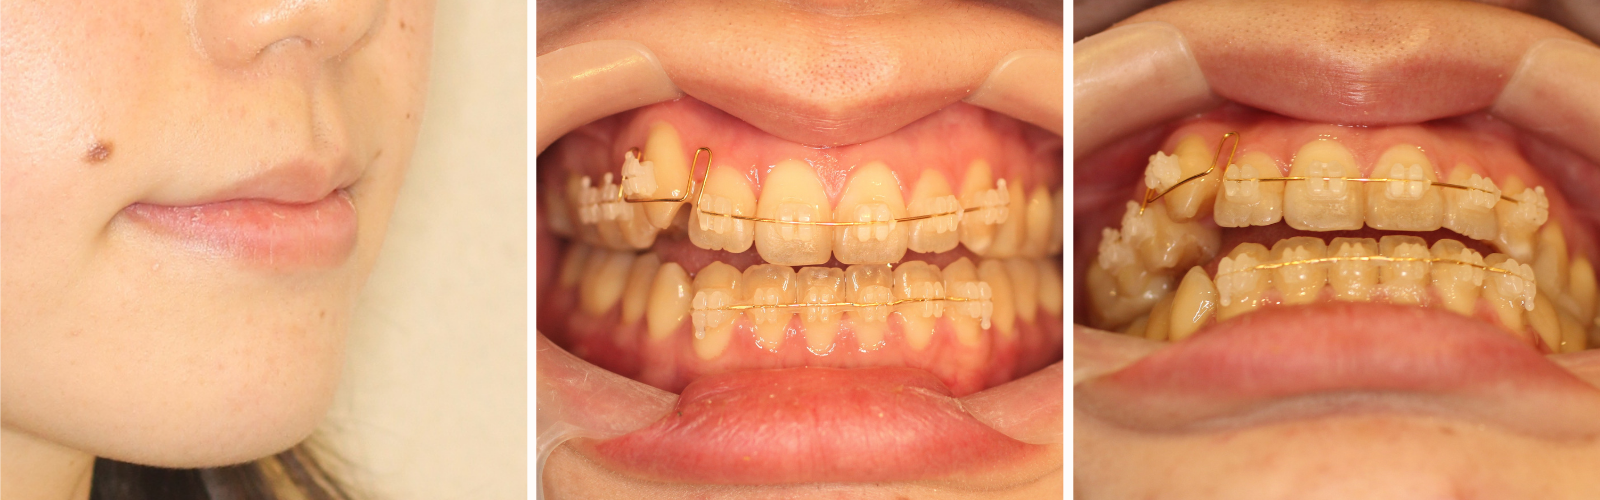 八重歯治療中の写真